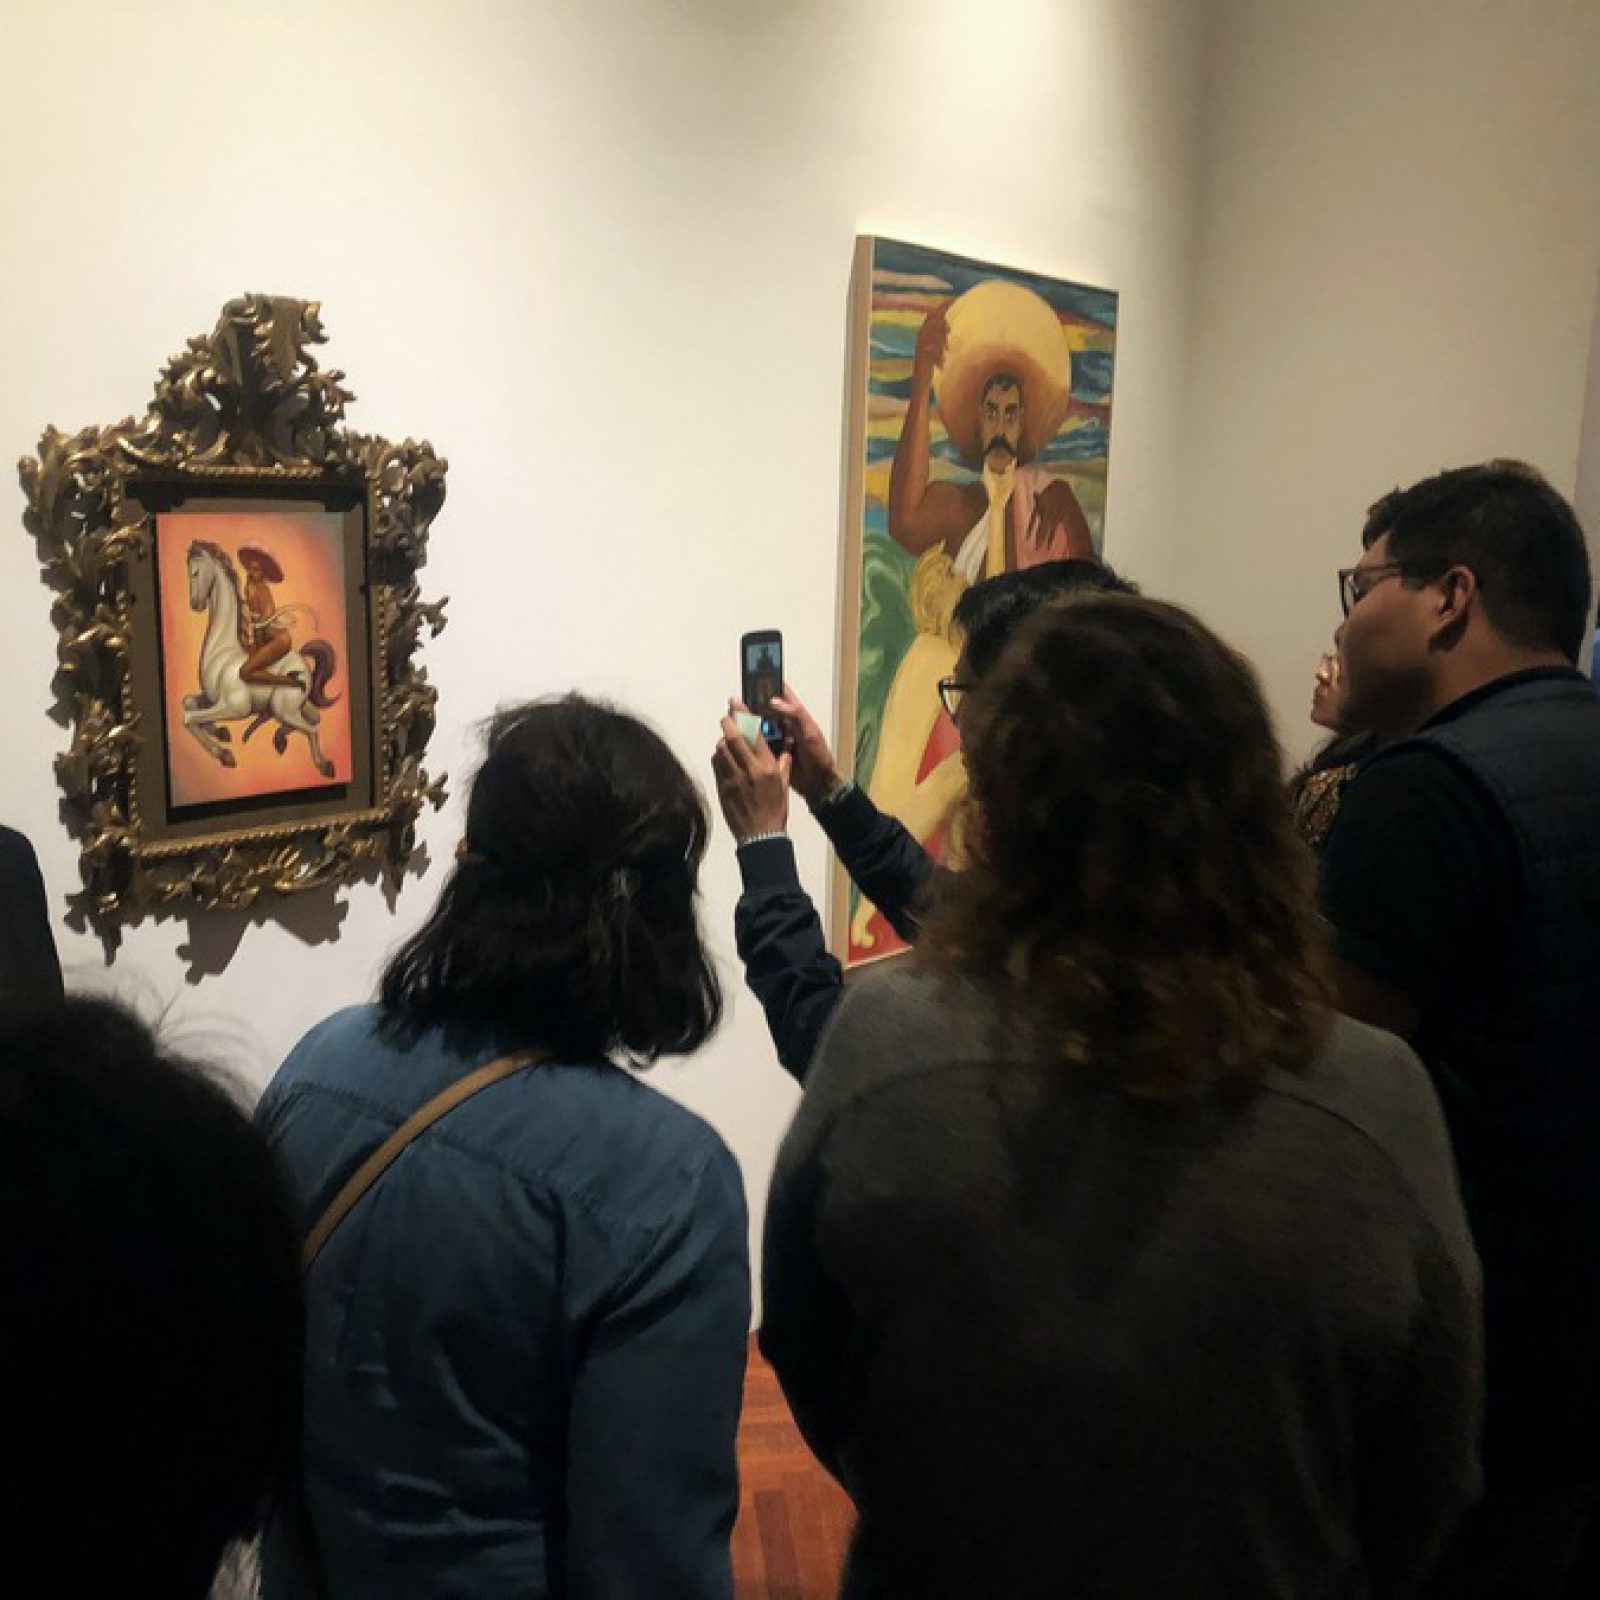 El público se aglomera en una de las salas del Palacio de Bellas Artes donde se encuentra la polémica pintura de Zapata del artista Fabián Cháirez. Foto: Edgar Alejandro Hernández